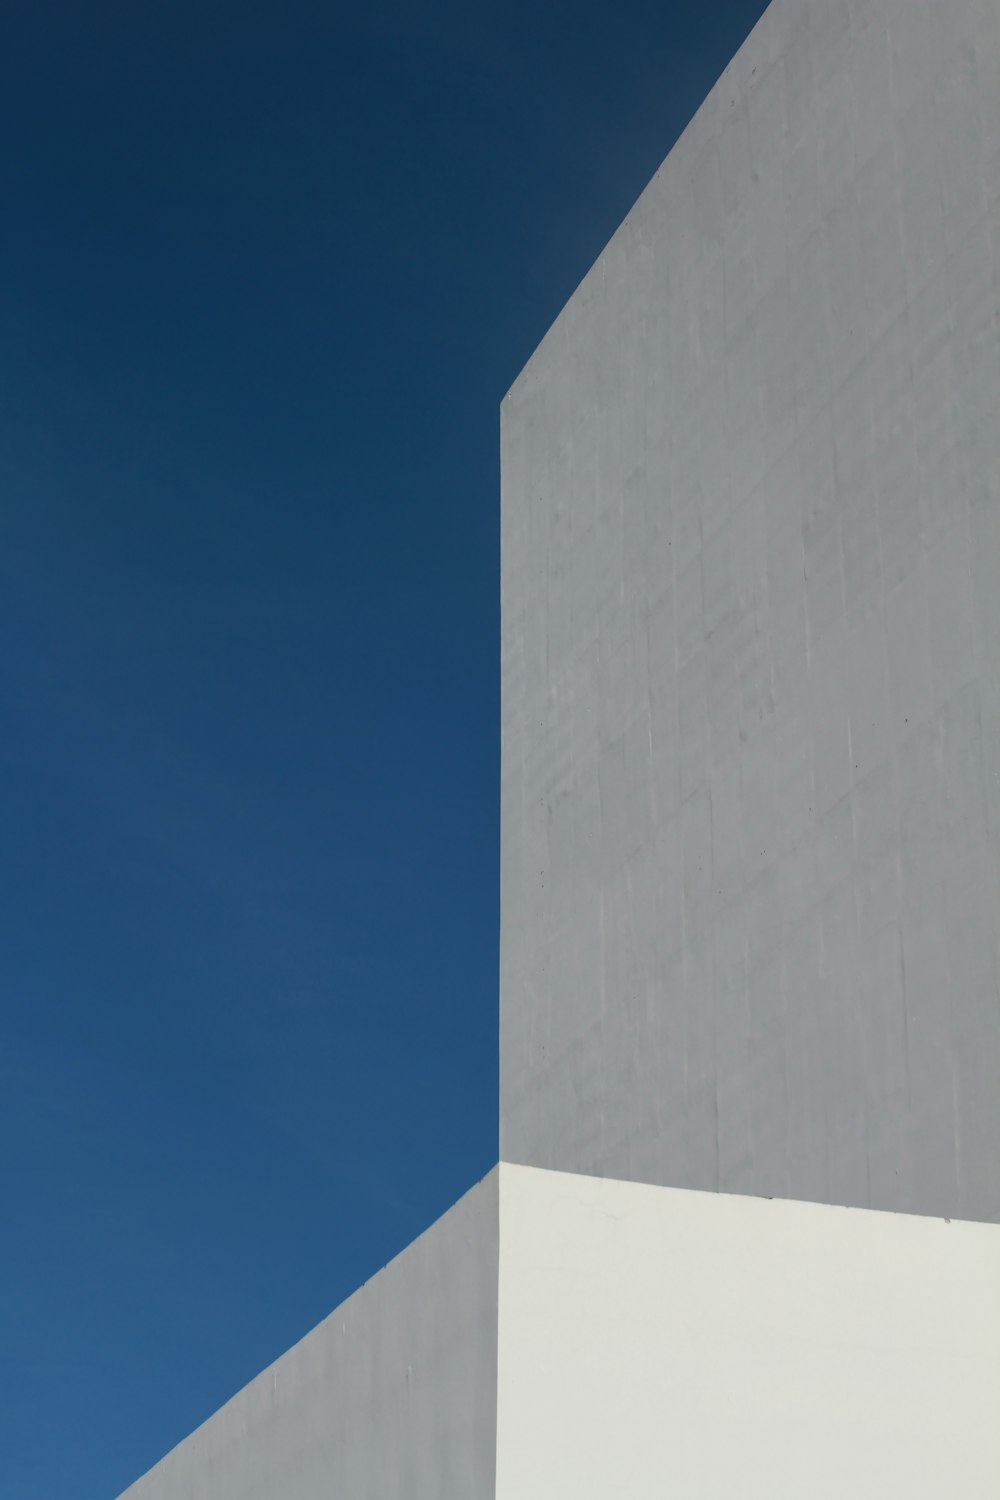 edifício de concreto branco sob o céu azul durante o dia